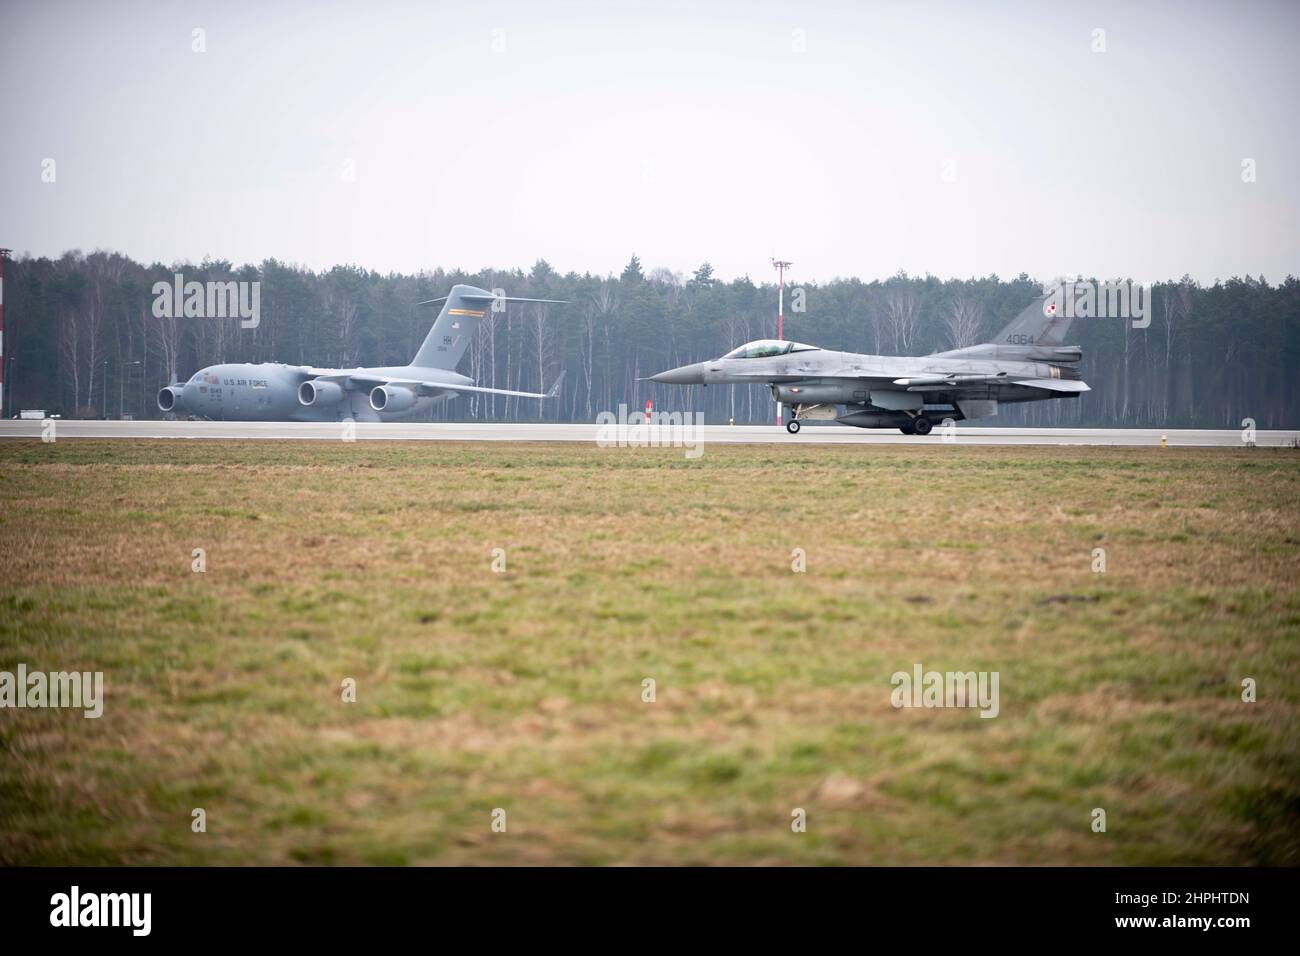 Un F-16 de la Force aérienne polonaise atterrit après l'entraînement de base à la manœuvre d'un chasseur avec les aigles F-15C de la Force aérienne américaine affectés à l'escadron de combat 493rd de la Royal Air Force (RAF) Lakenheath, base aérienne d'Englandat Łask, Pologne, à l'appui de la mission de police aérienne renforcée de l'Organisation du Traité de l'Atlantique Nord (OTAN), le 15 février 2022. La mission de police aérienne de l'OTAN a été exécutée en continu depuis 1961, mais il est essentiel de suivre fréquemment des entraînements et des exercices pour s'assurer que la puissance aérienne de l'OTAN reste entièrement préparée à tout moment. (É.-U. Photo de la Force aérienne par Tech. Sgt. Jacob Albers) Banque D'Images